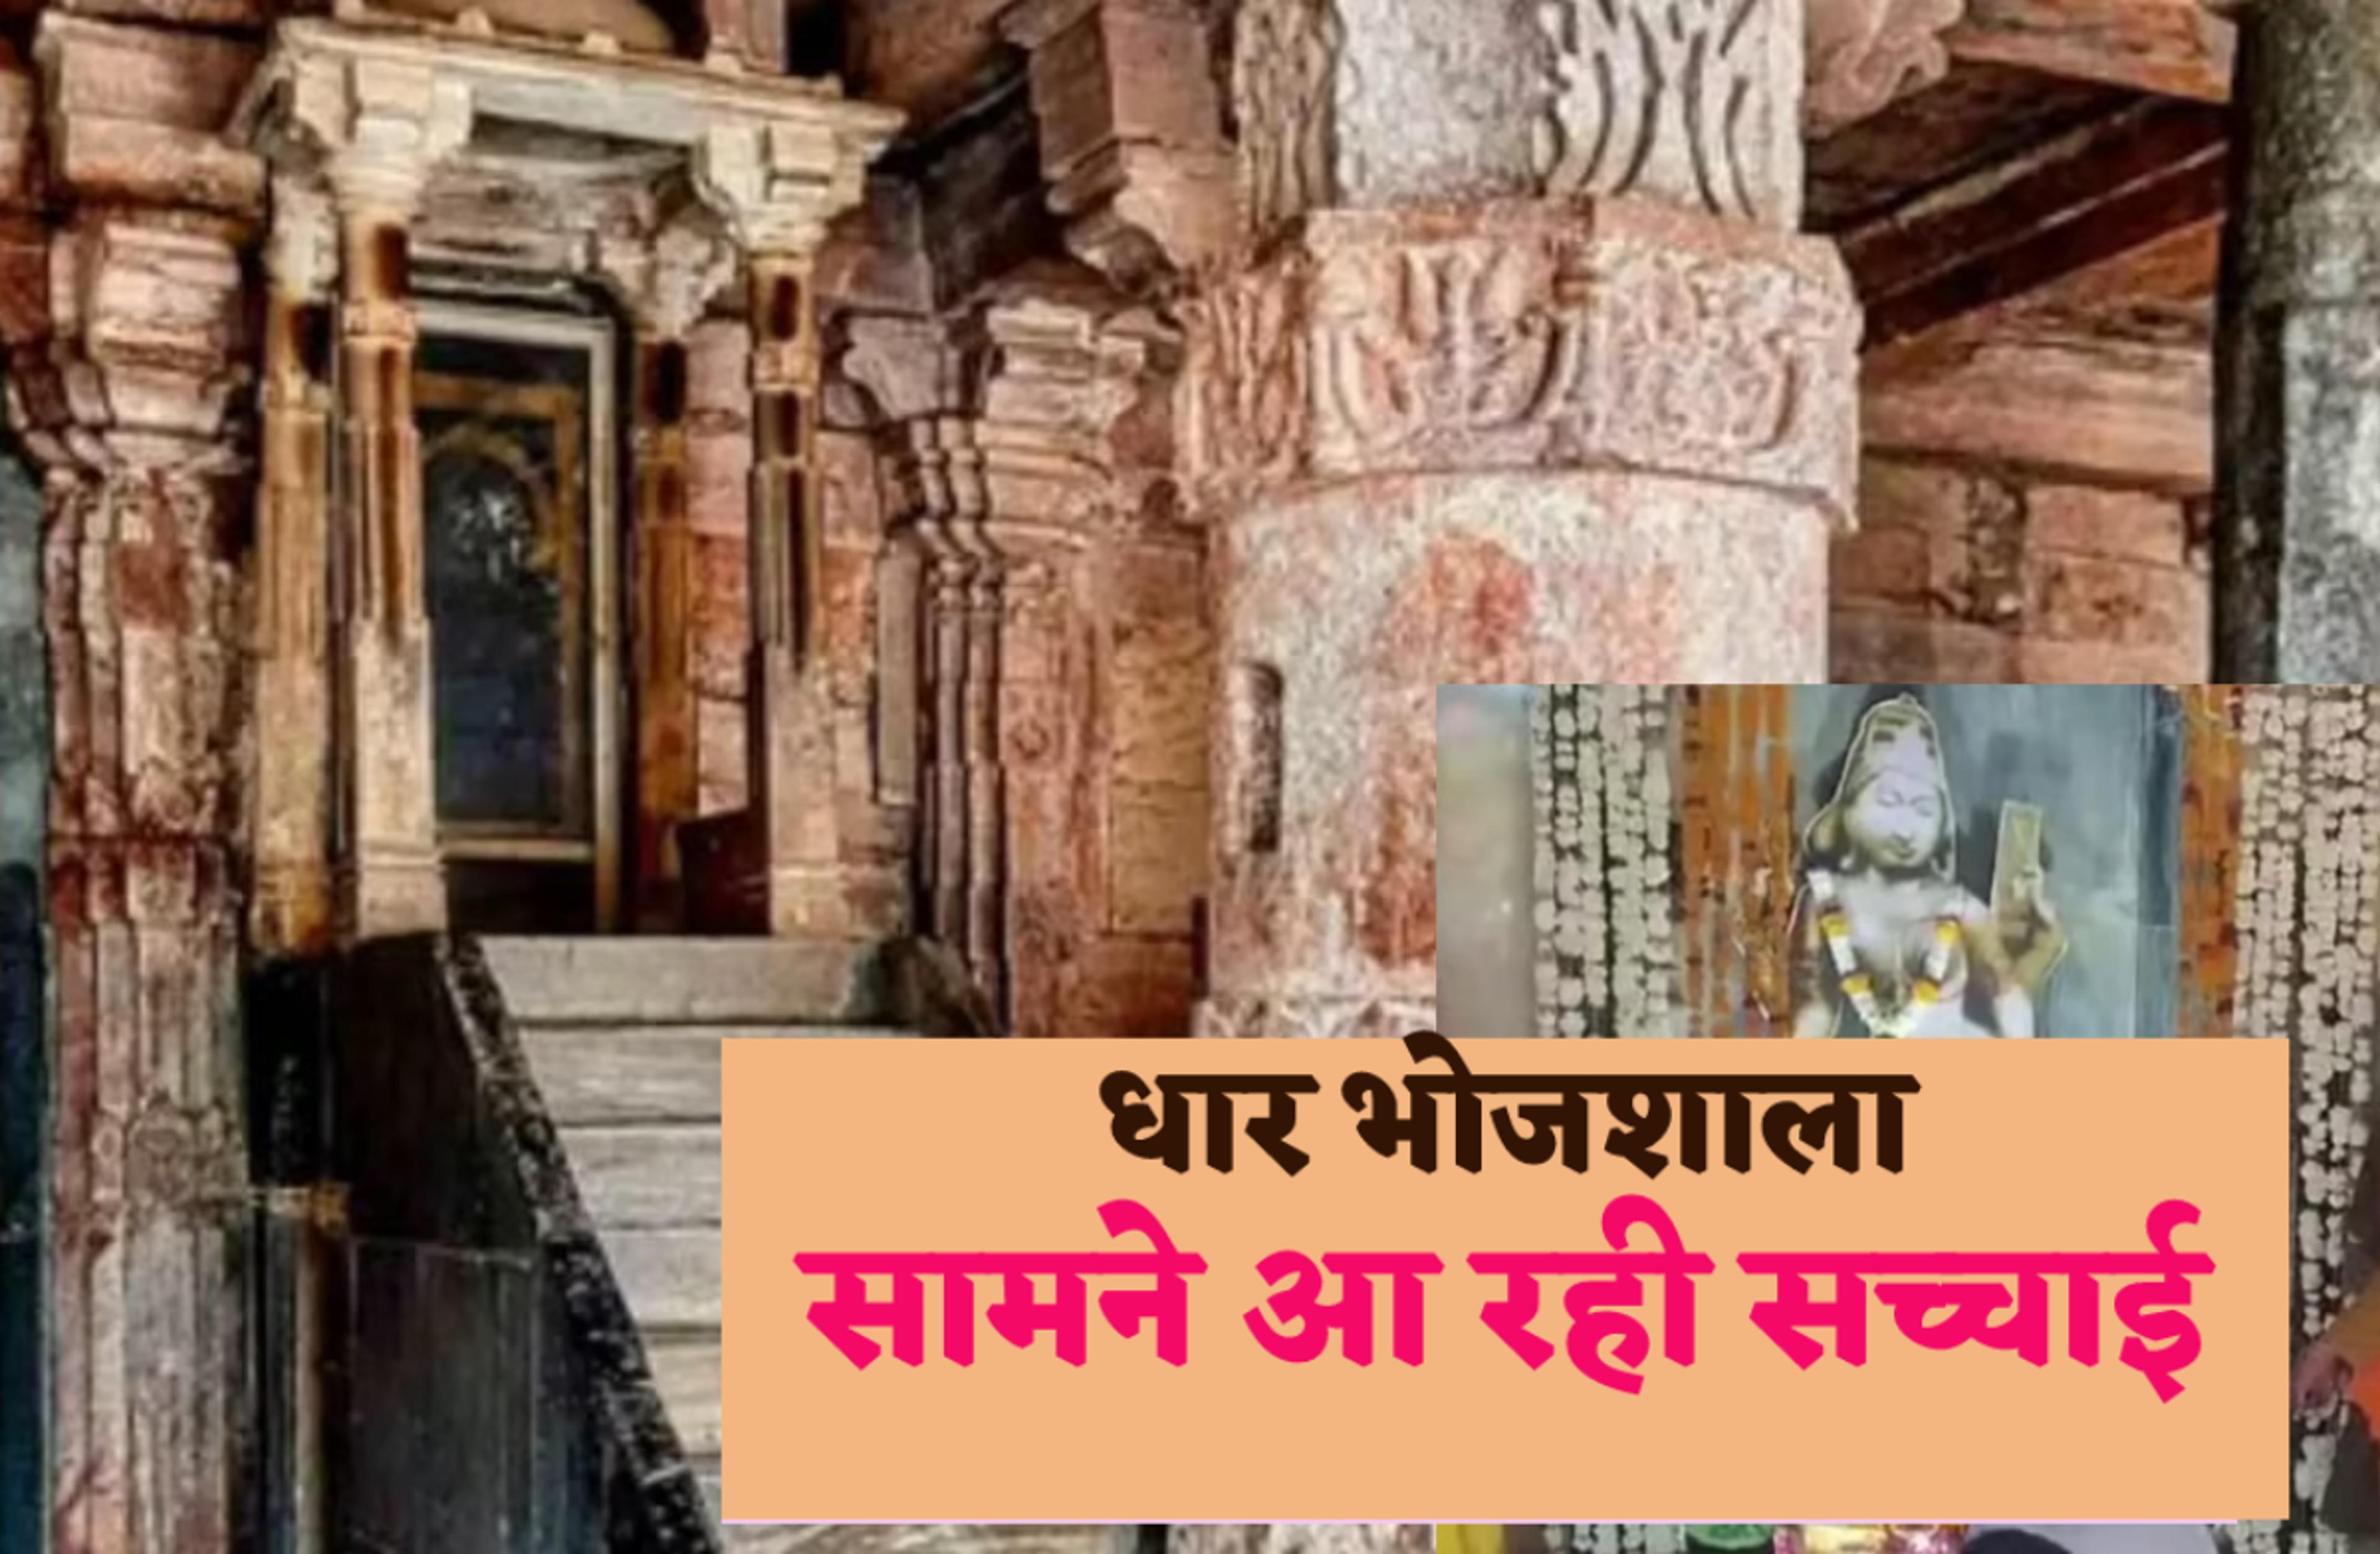 Dhar Bhojshala Survey – भोजशाला में मिला हनुमान मंदिर, धार में एएसआई के सर्वे के
बीच बड़ा दावा